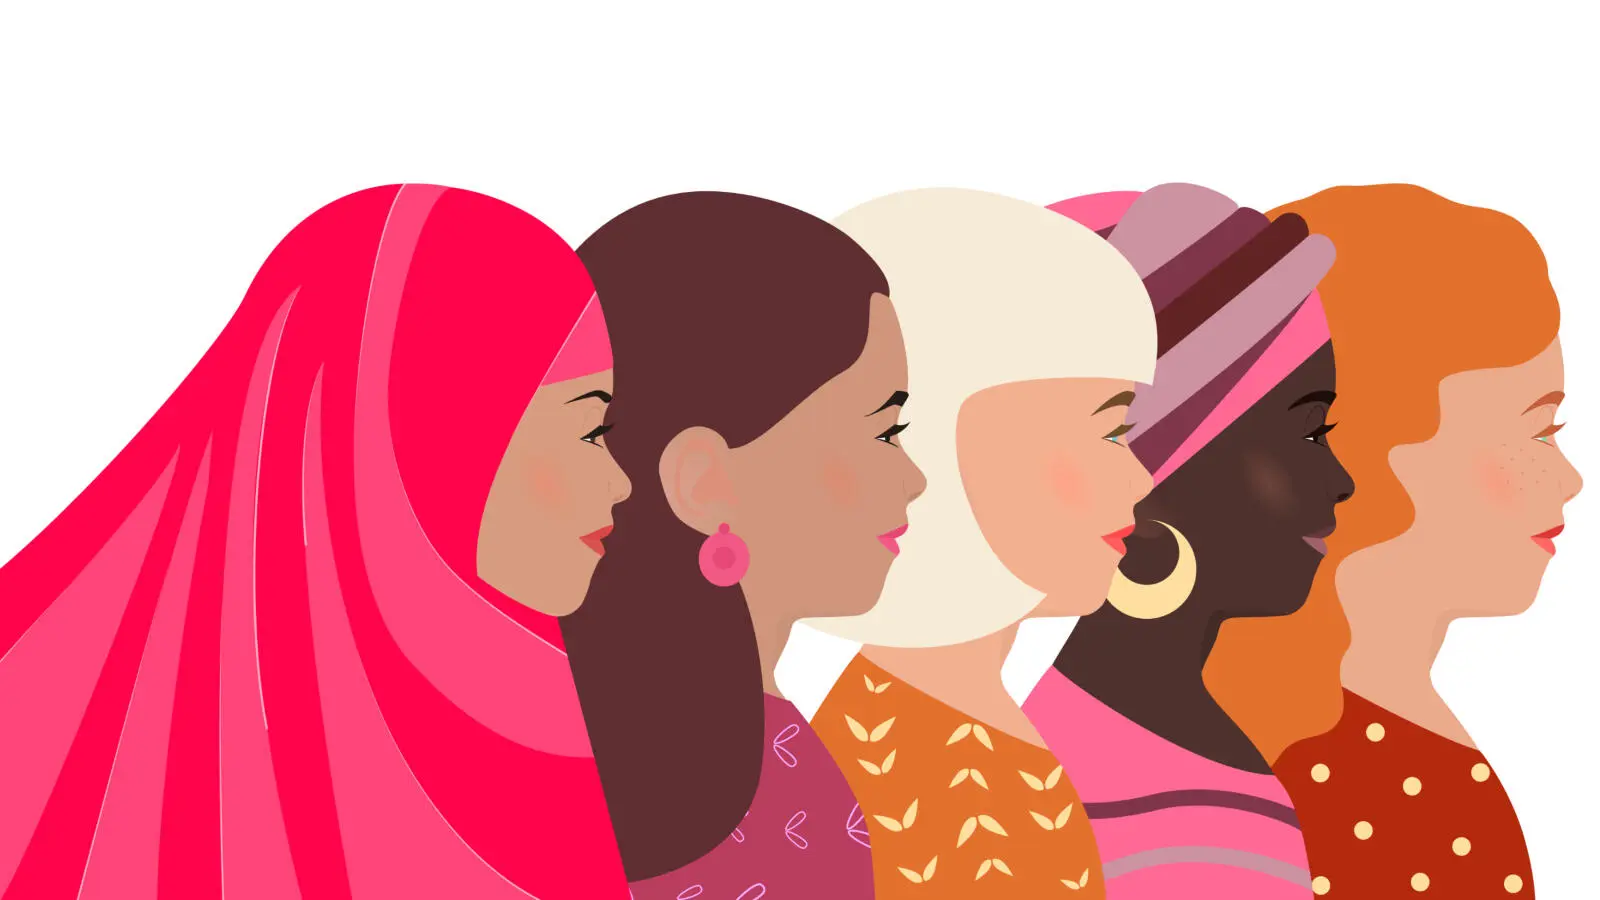 شعار يوم المرأة العالمي 2022